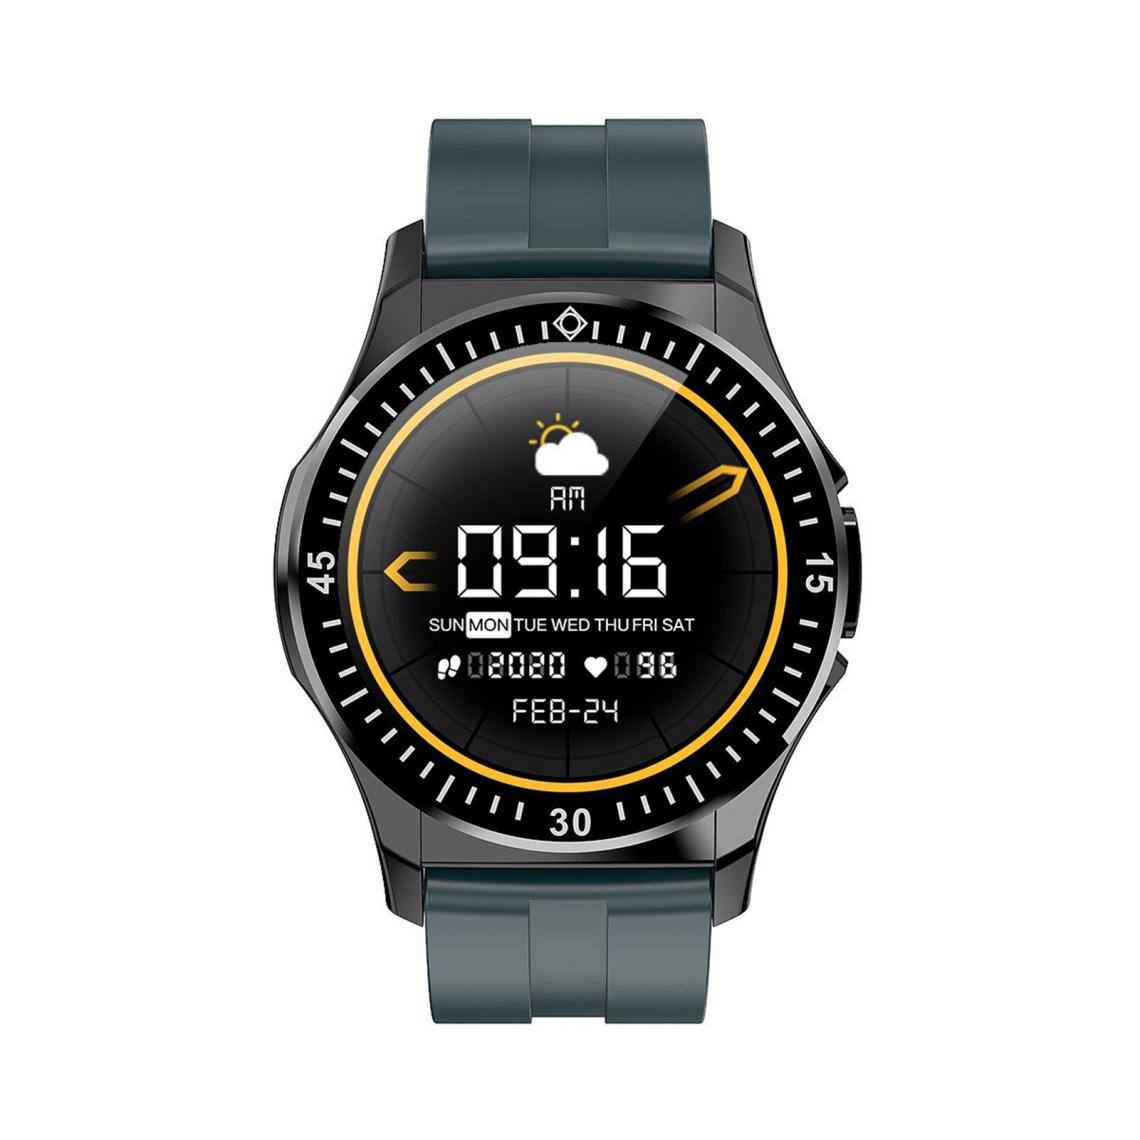 Justgreenbox - 1.3-Inch Touch Smart Watch IP67 Bracelet de sport étanche Fitness Tracker, Noir Vert - Montre connectée